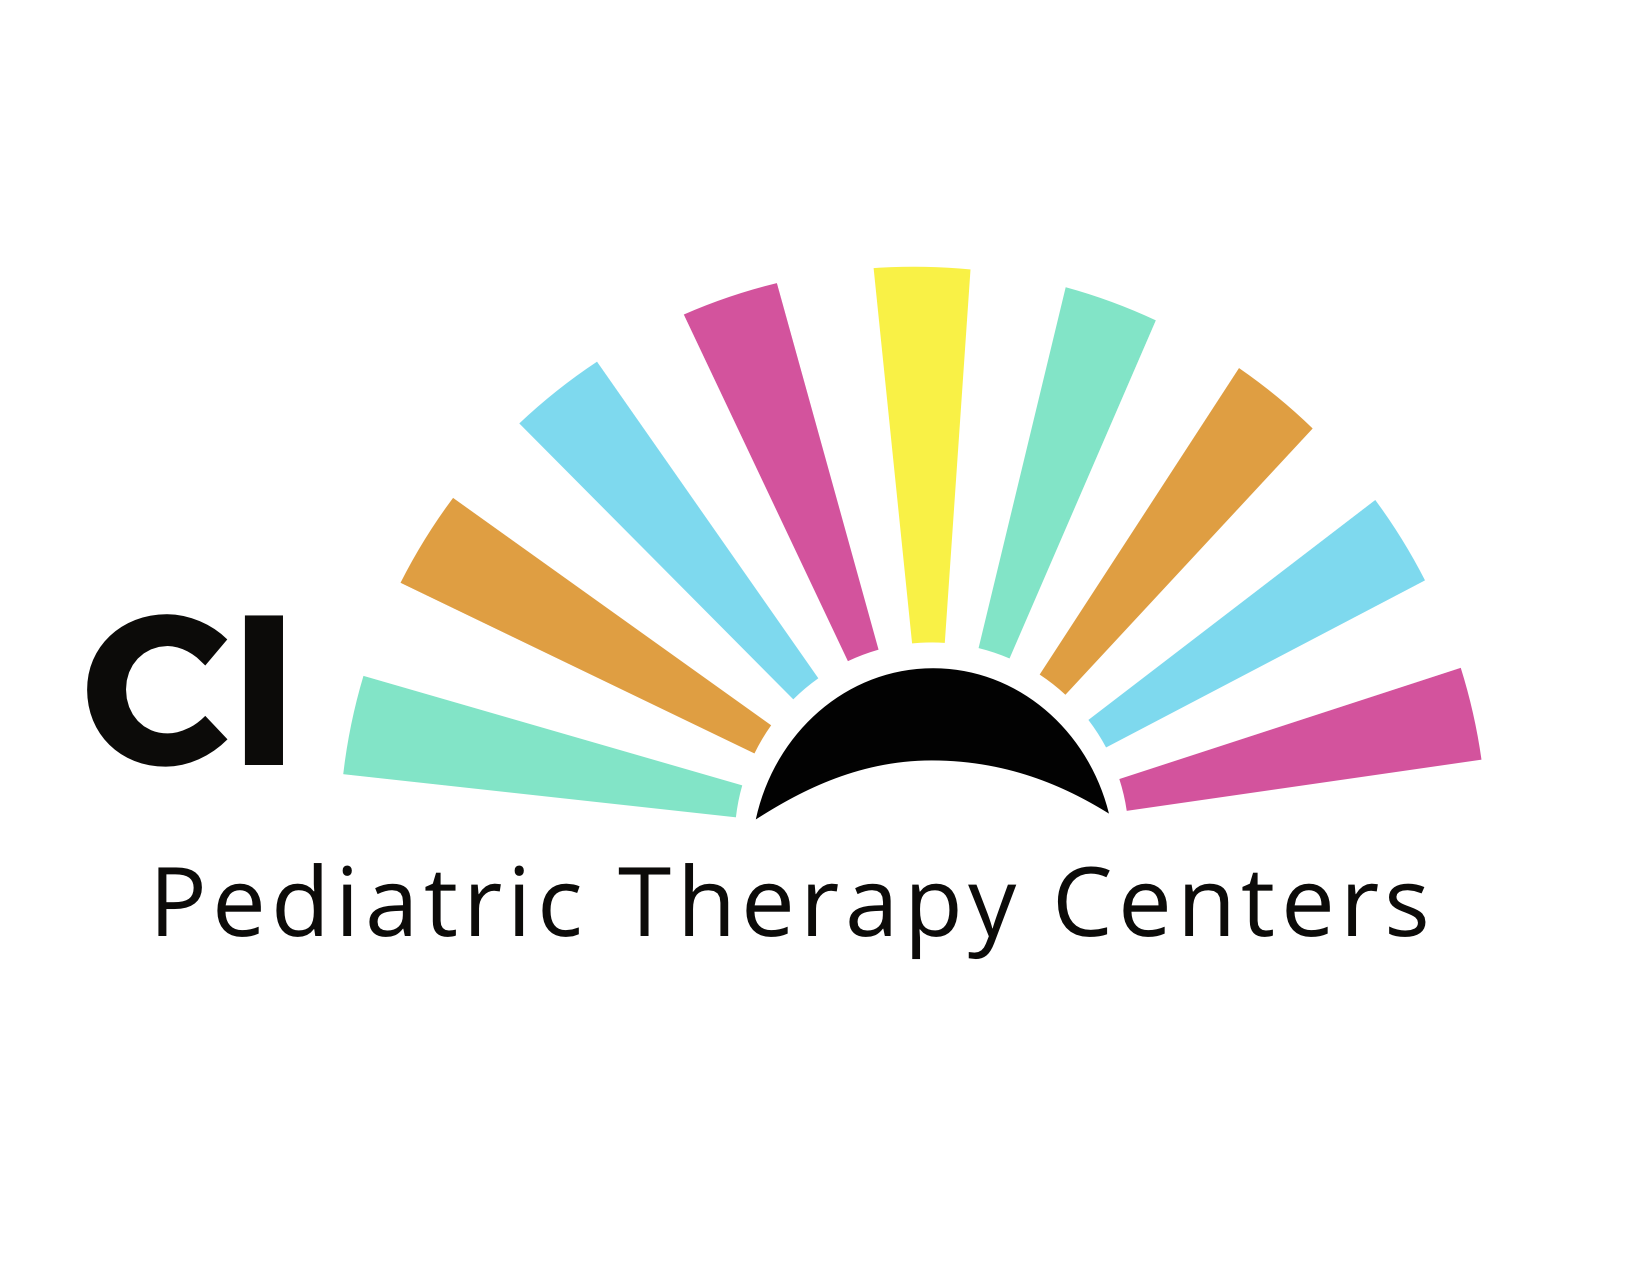 CI Pediatric Therapy Centers Company Logo